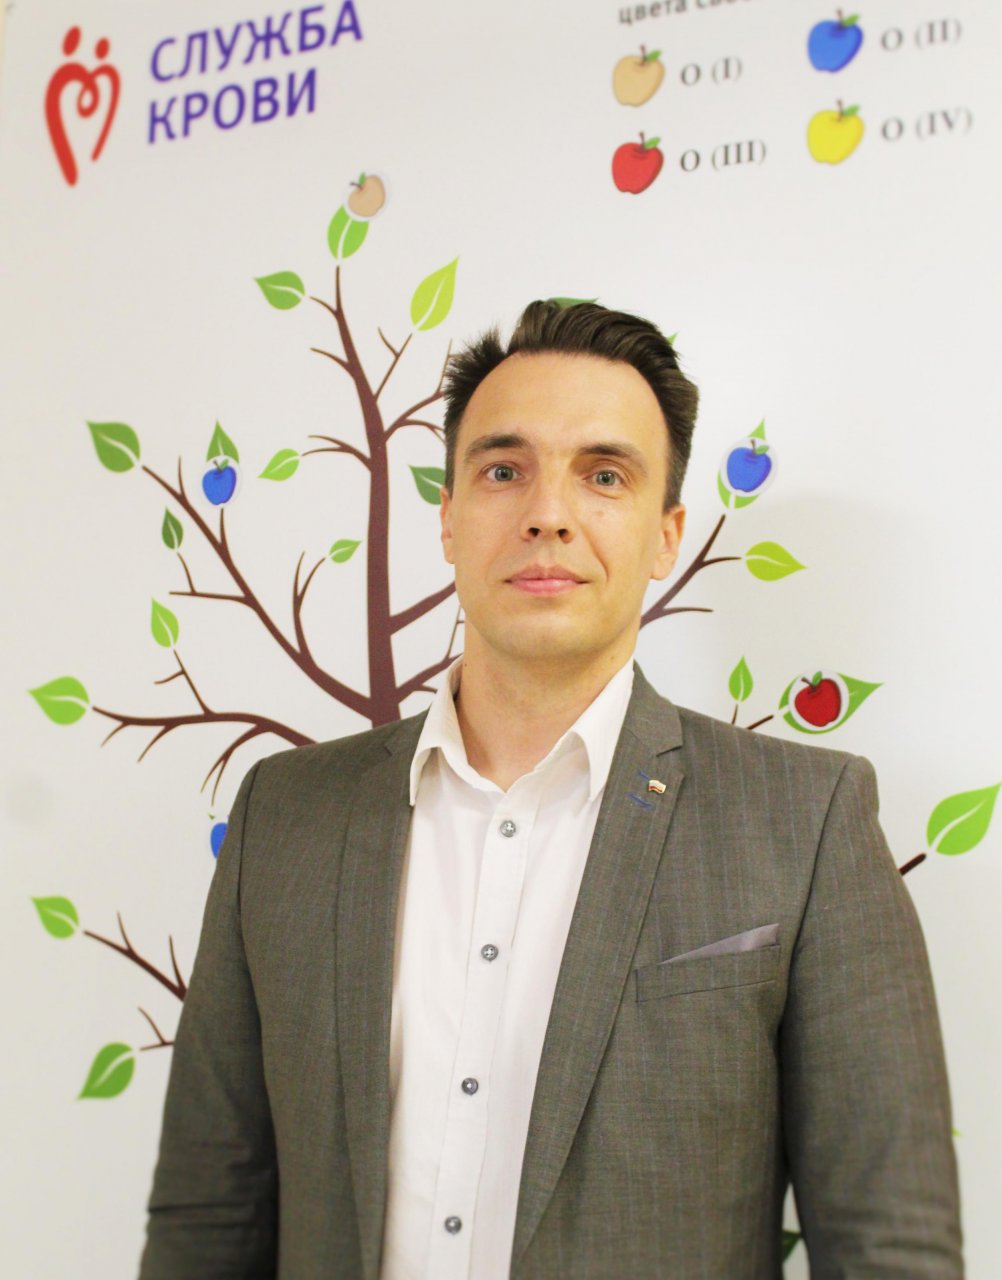 Максим Сушков: «Обновление крови позволяет организму повысить иммунитет»